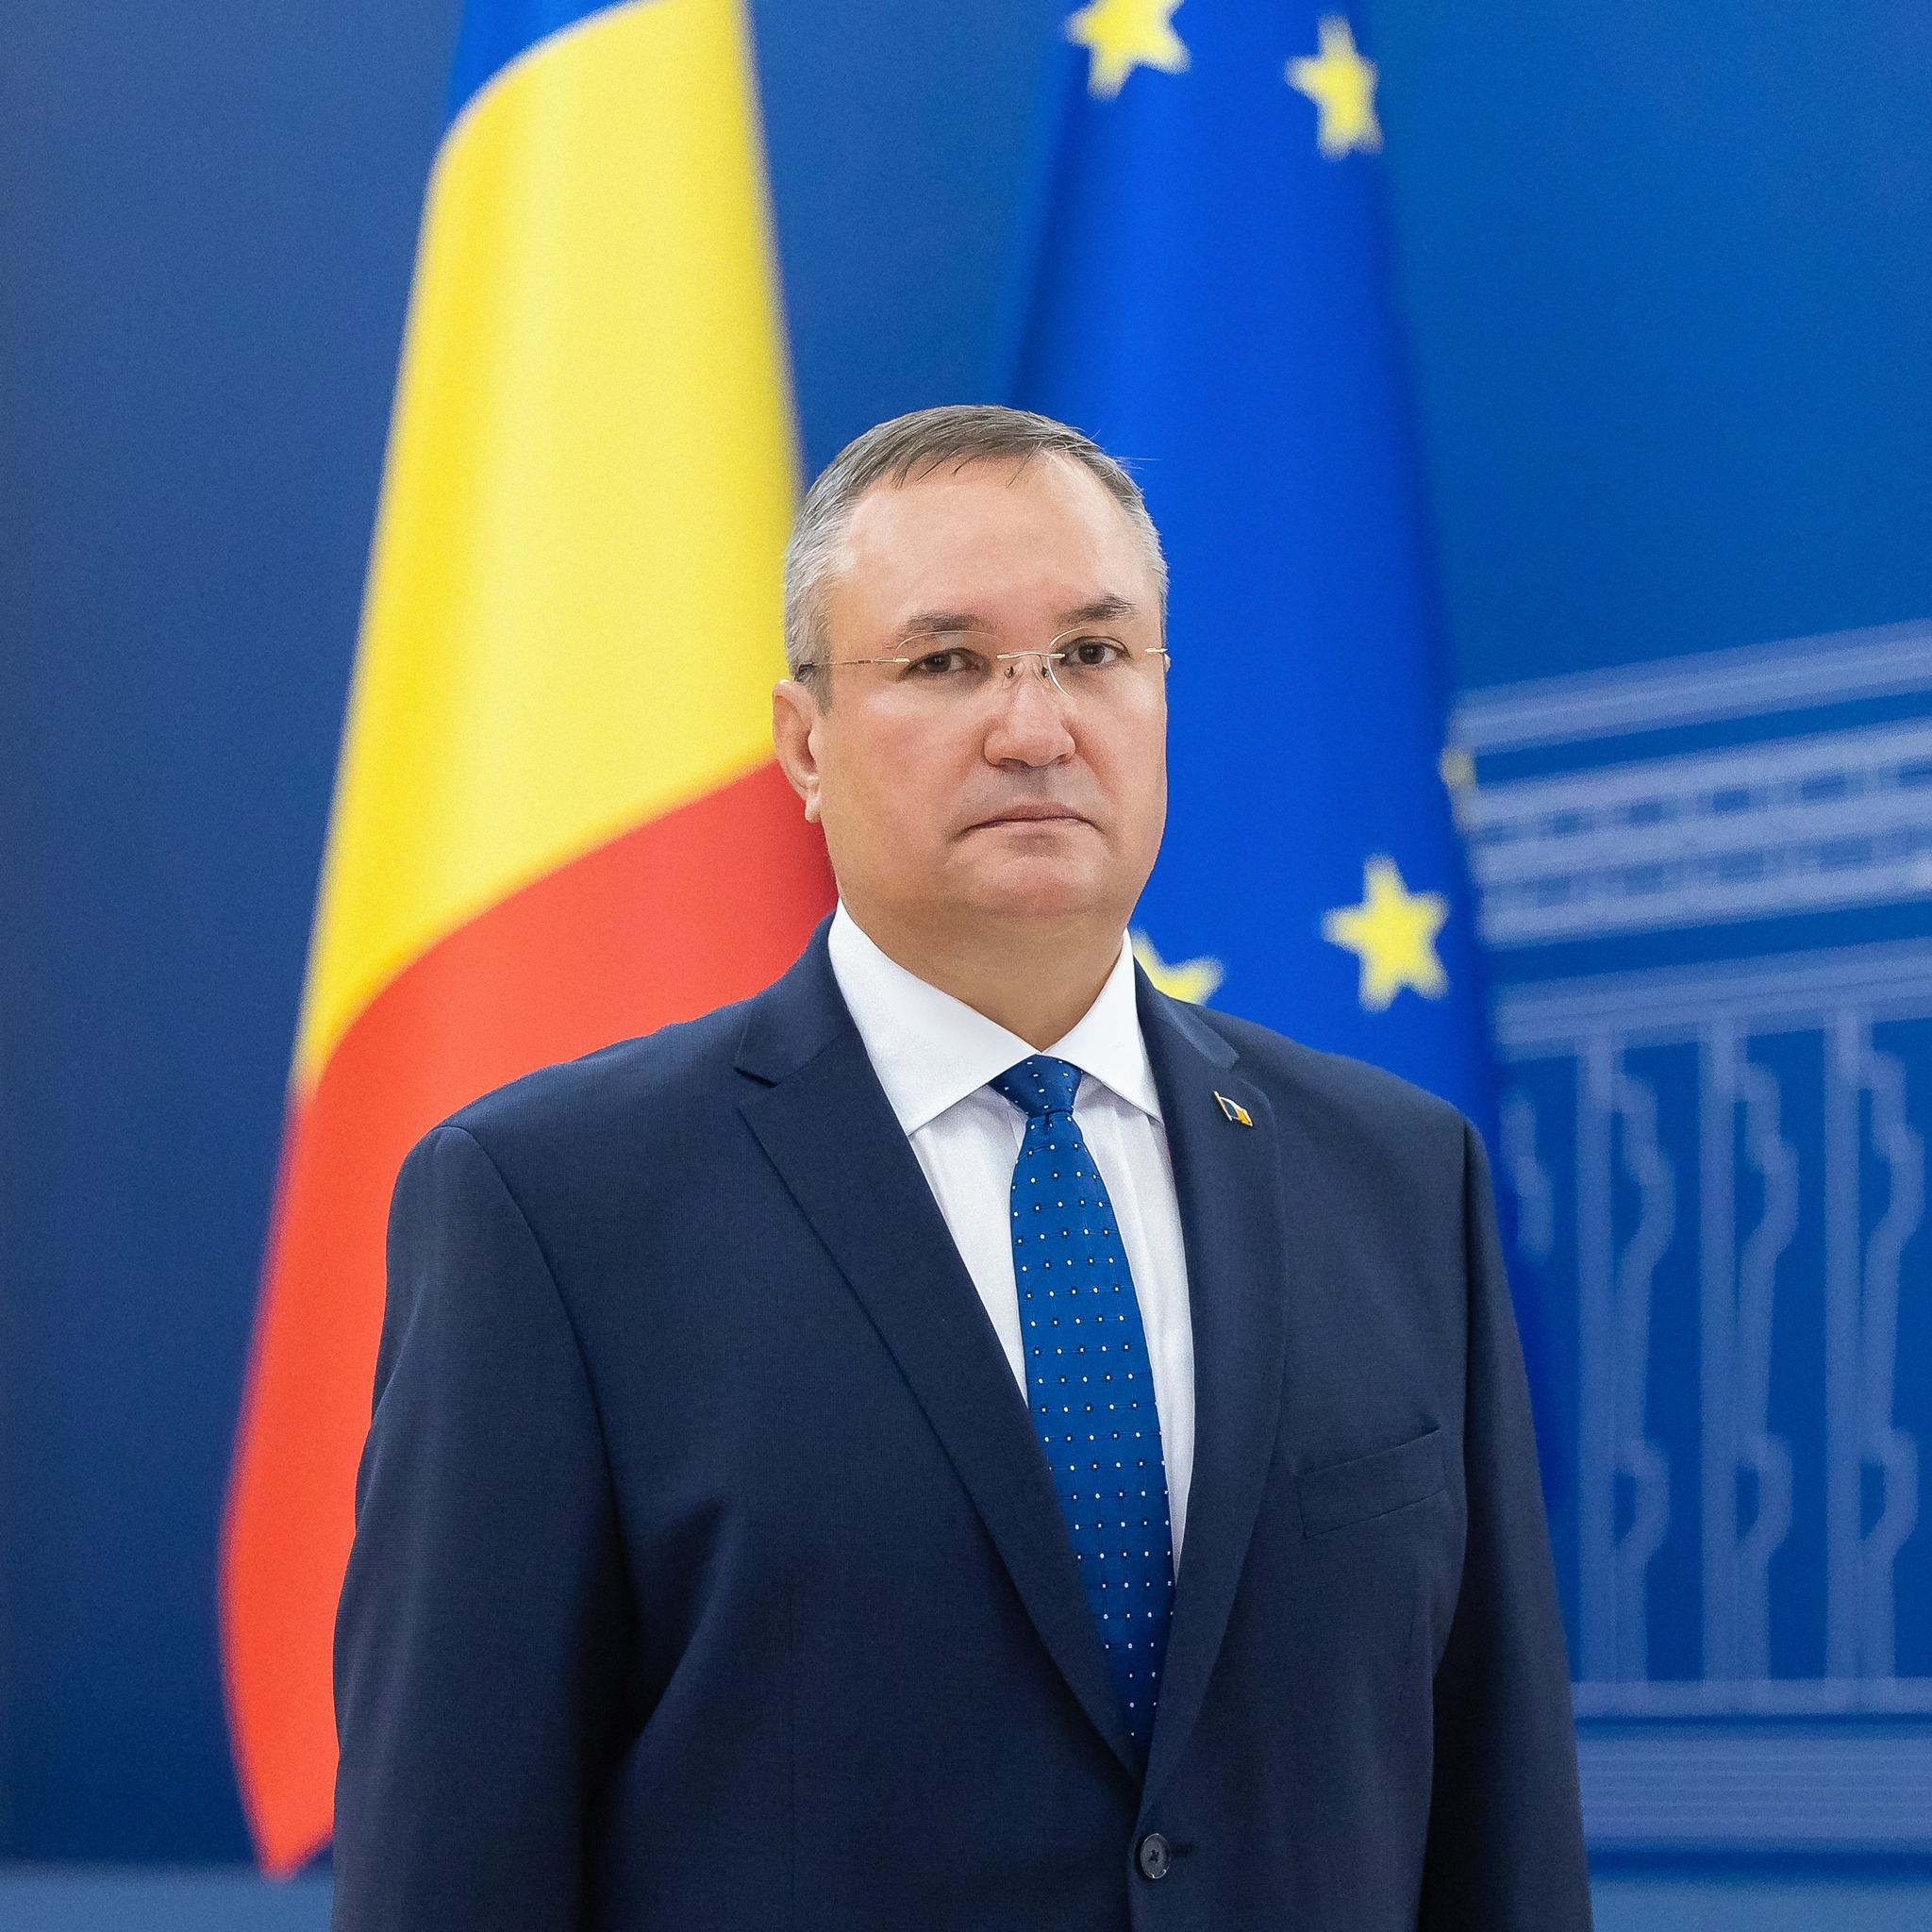 România cu premierul liberal în fruntea Guvernului a reușit în timpuri extrem de dificile să înregistreze succese importante